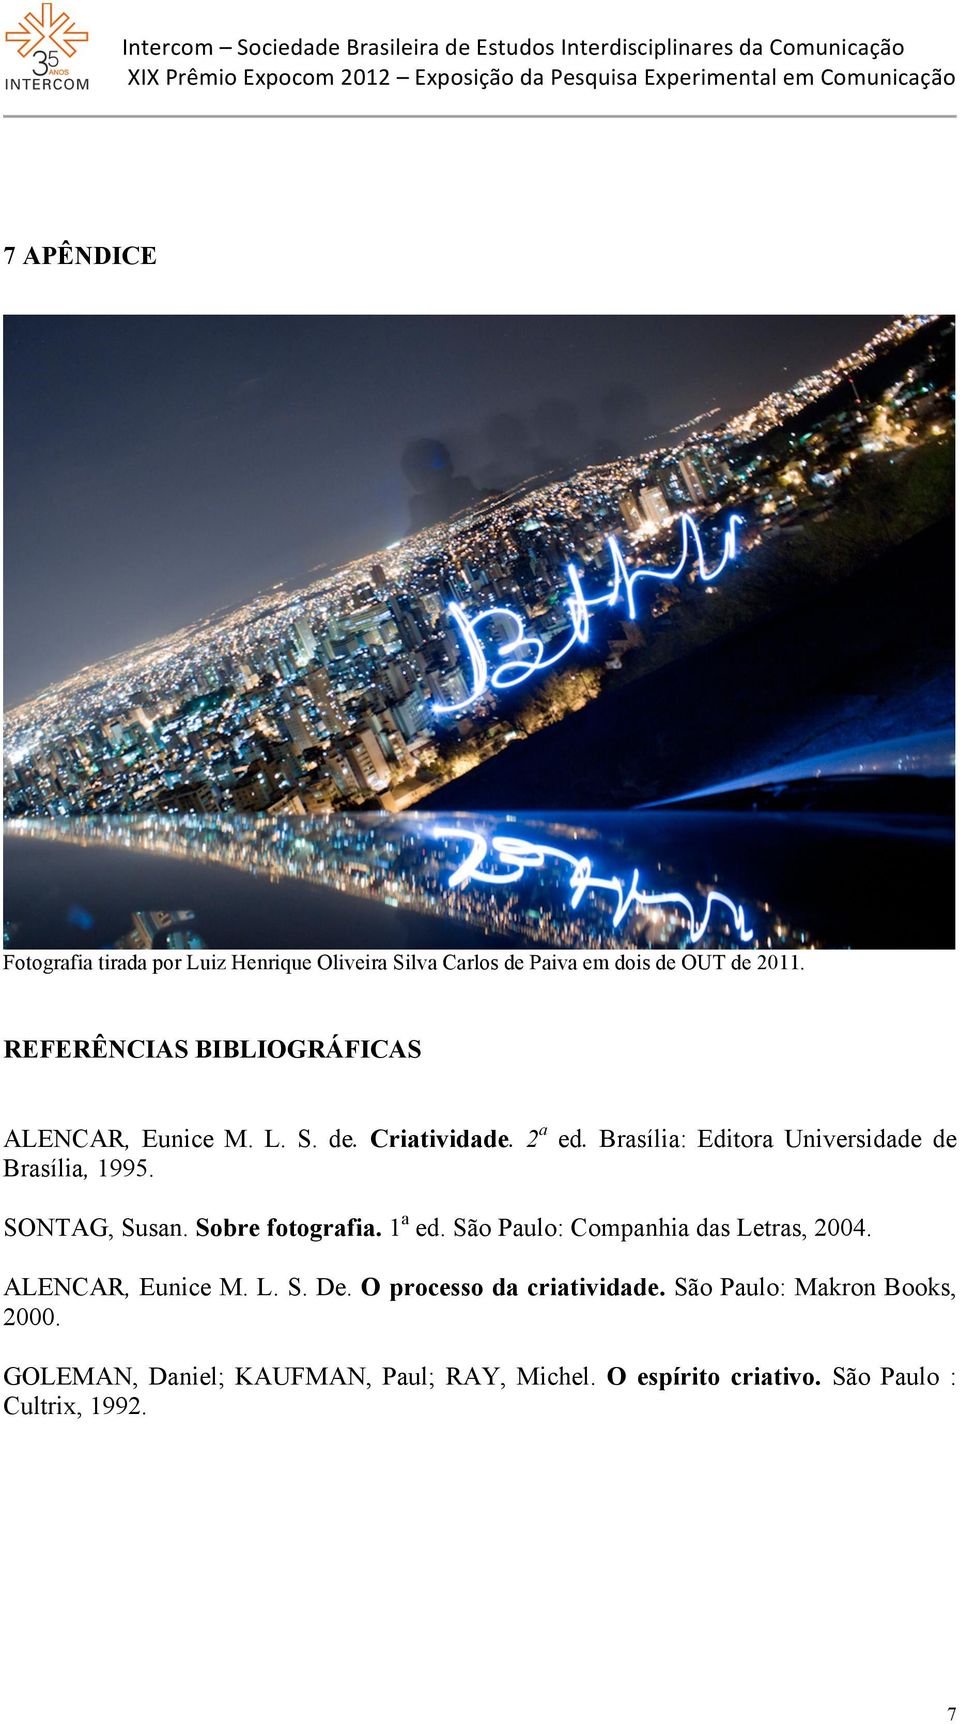 2a ed. Brasília: Editora Universidade de Brasília, 1995. SONTAG, Susan. Sobre fotografia. 1a ed. São Paulo: Companhia das Letras, 2004. ALENCAR, Eunice M. L. S. De.